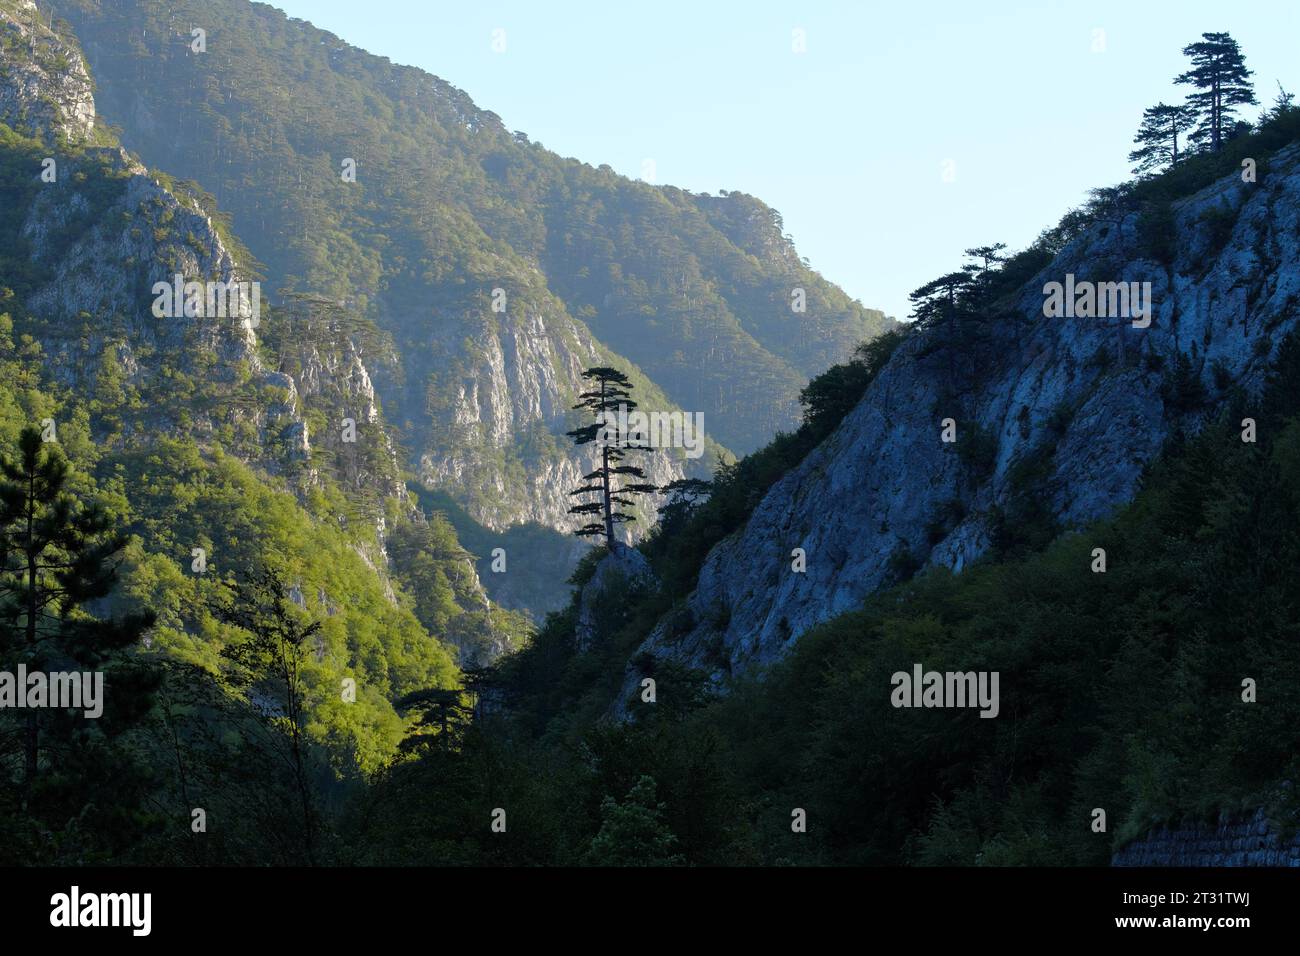 Foresta di pini al sole del mattino sul canyon del fiume Sutjeska in Bosnia ed Erzegovina Foto Stock